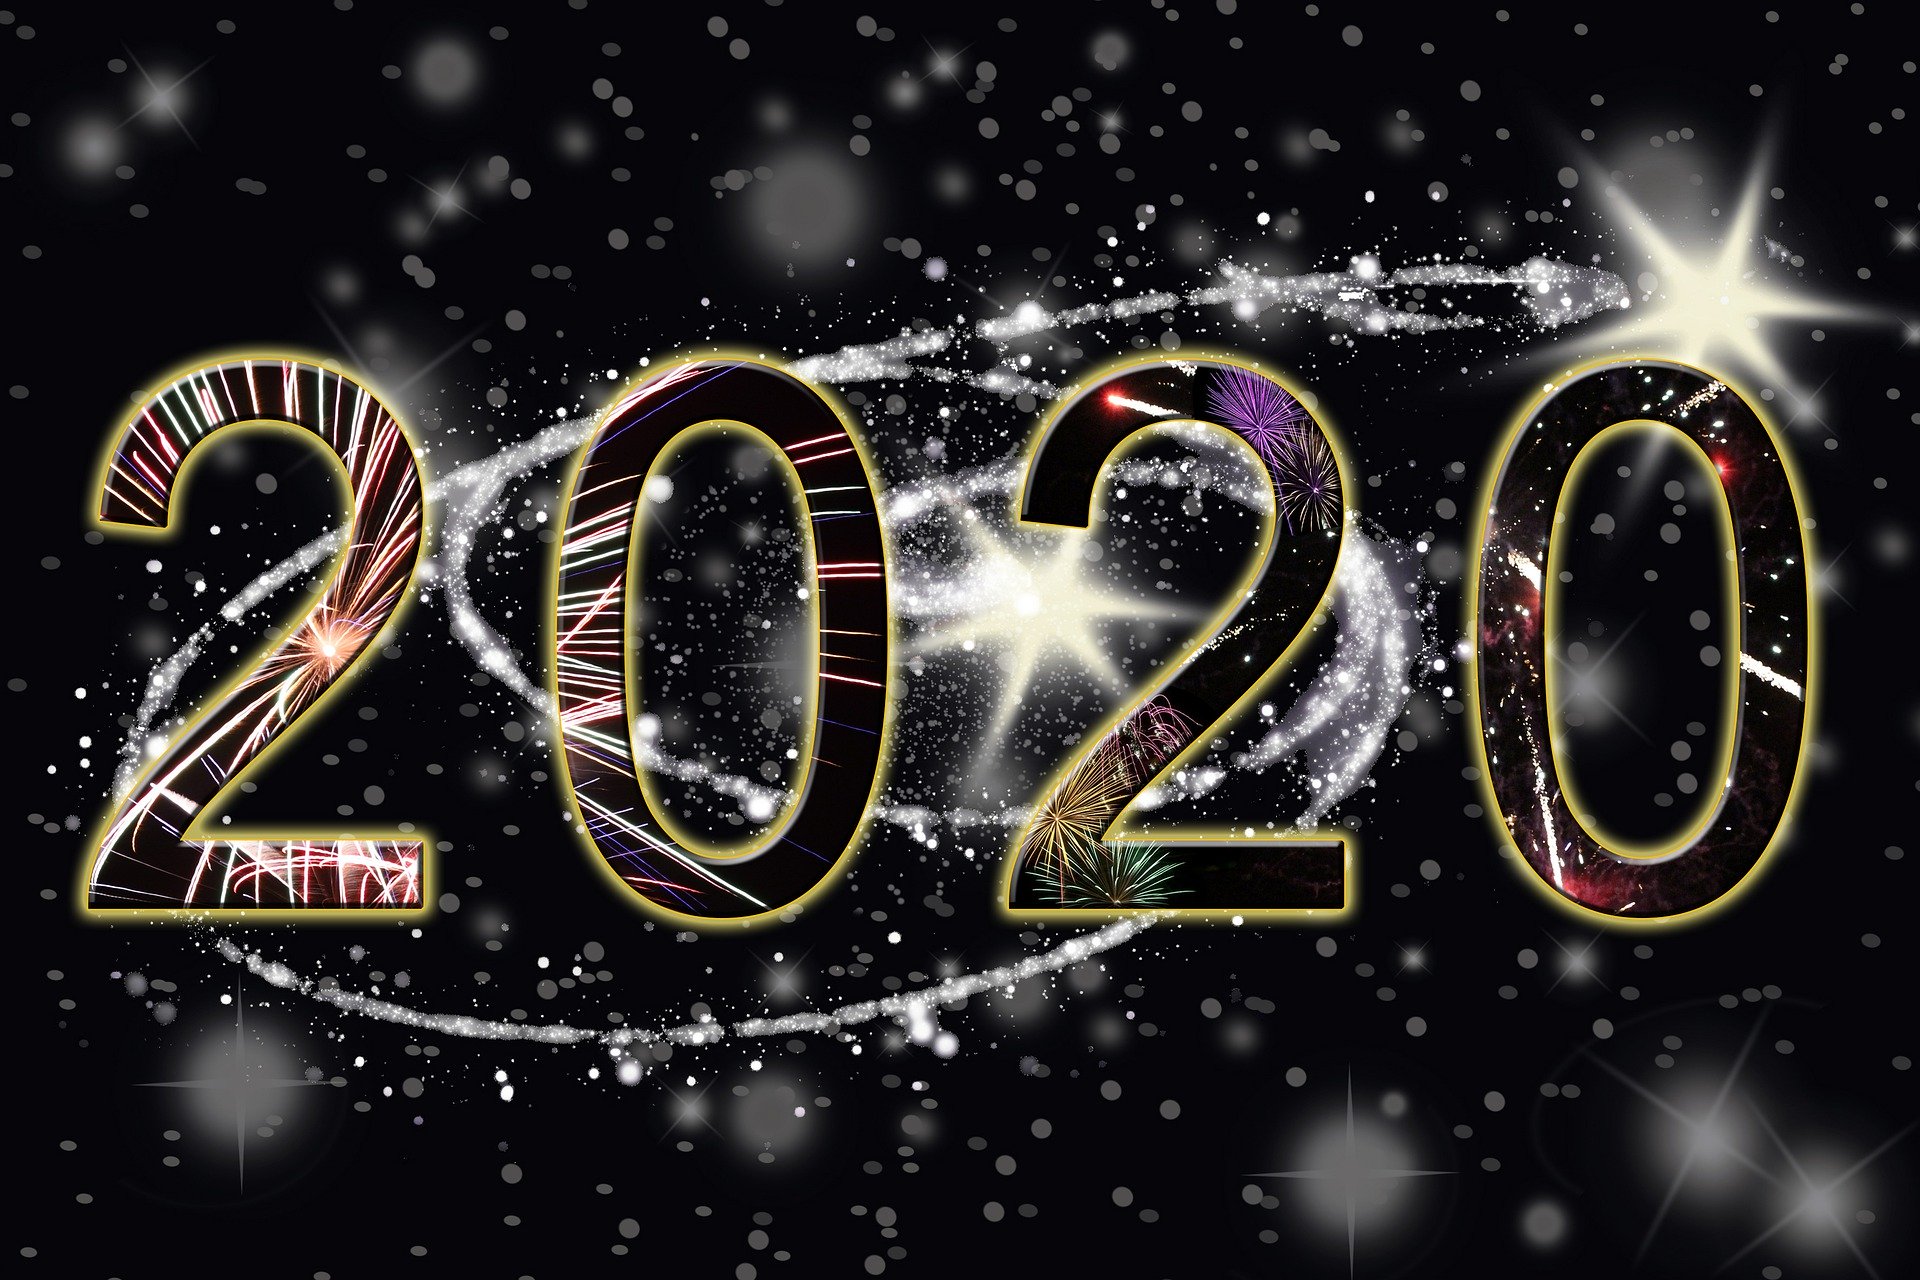 Szczęśliwego Nowego Roku 2020